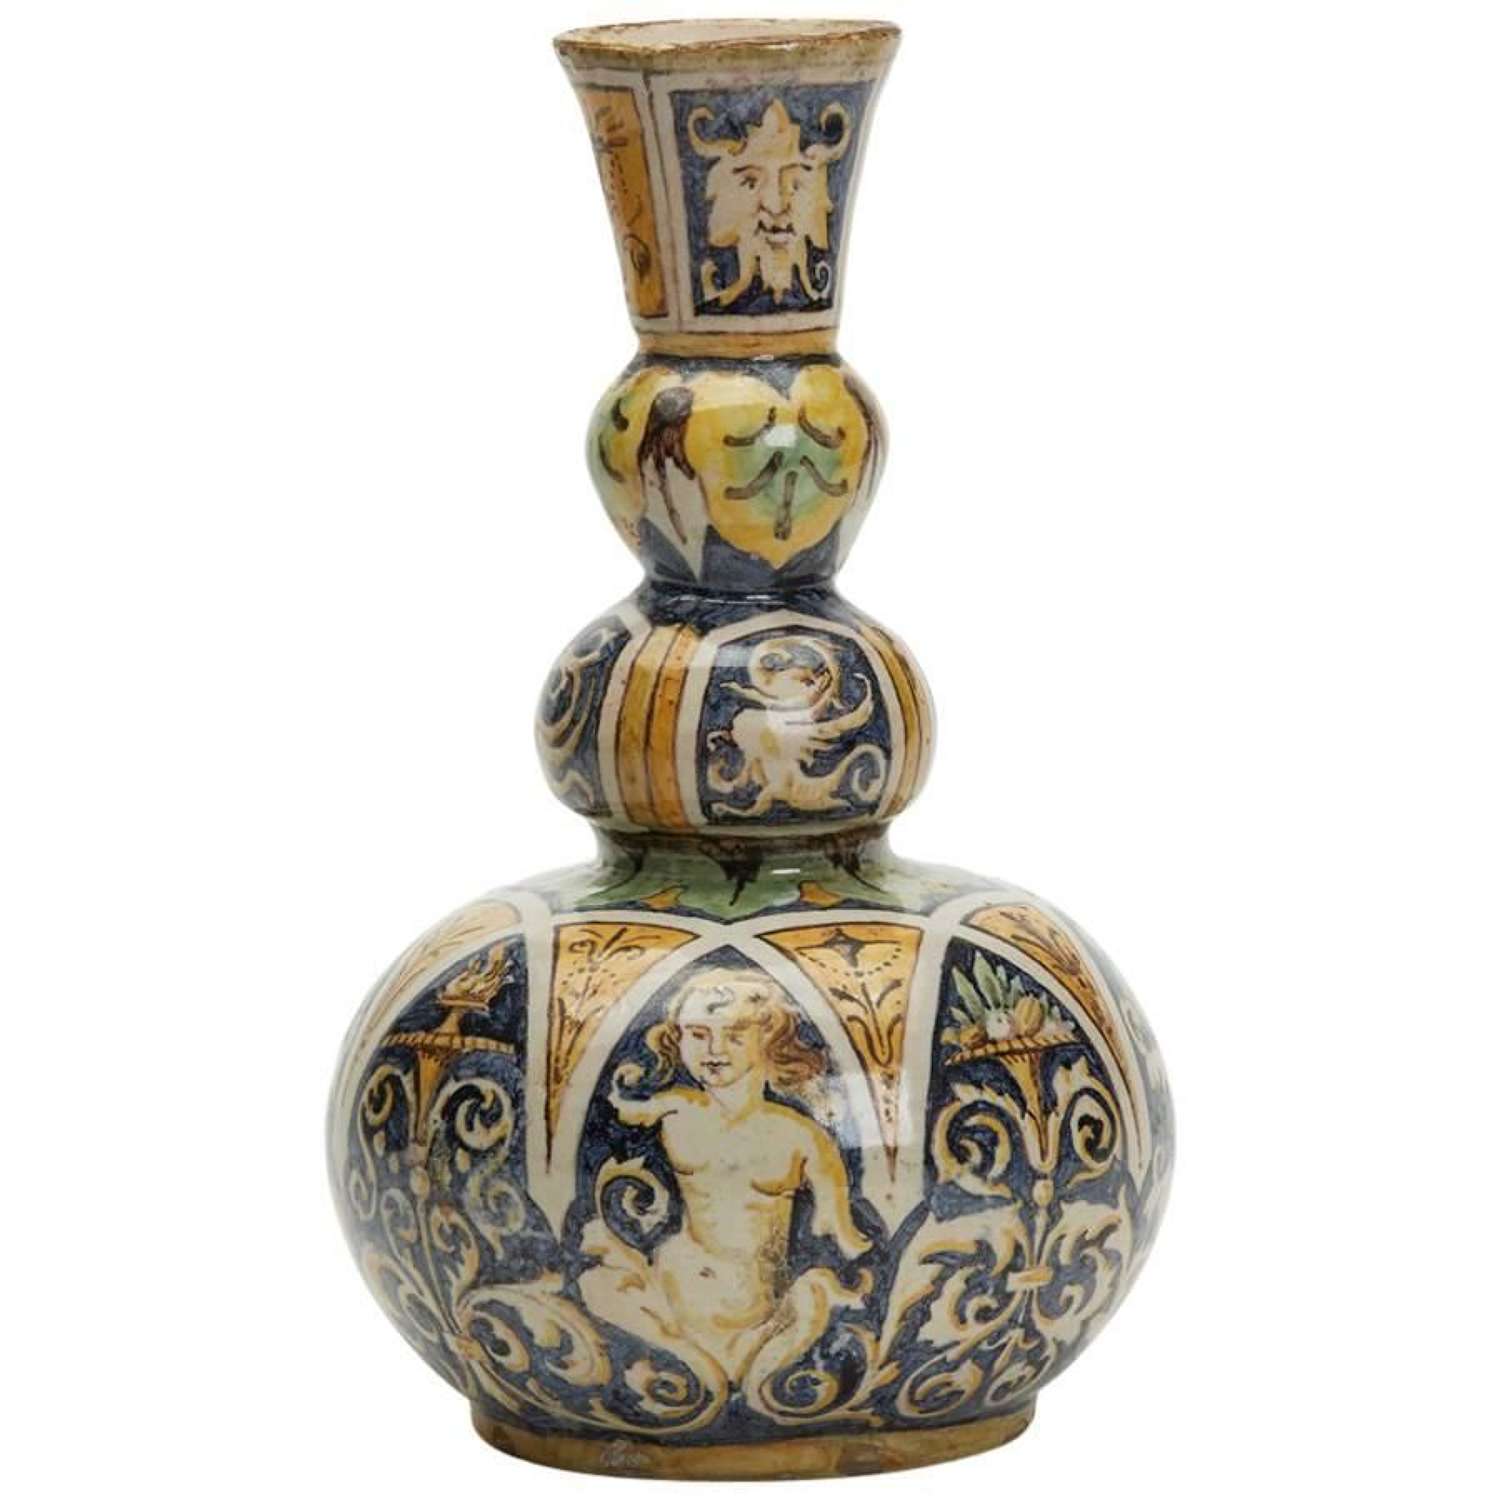 Antique Italian Maiolica Classical Painted Vase 19th Century